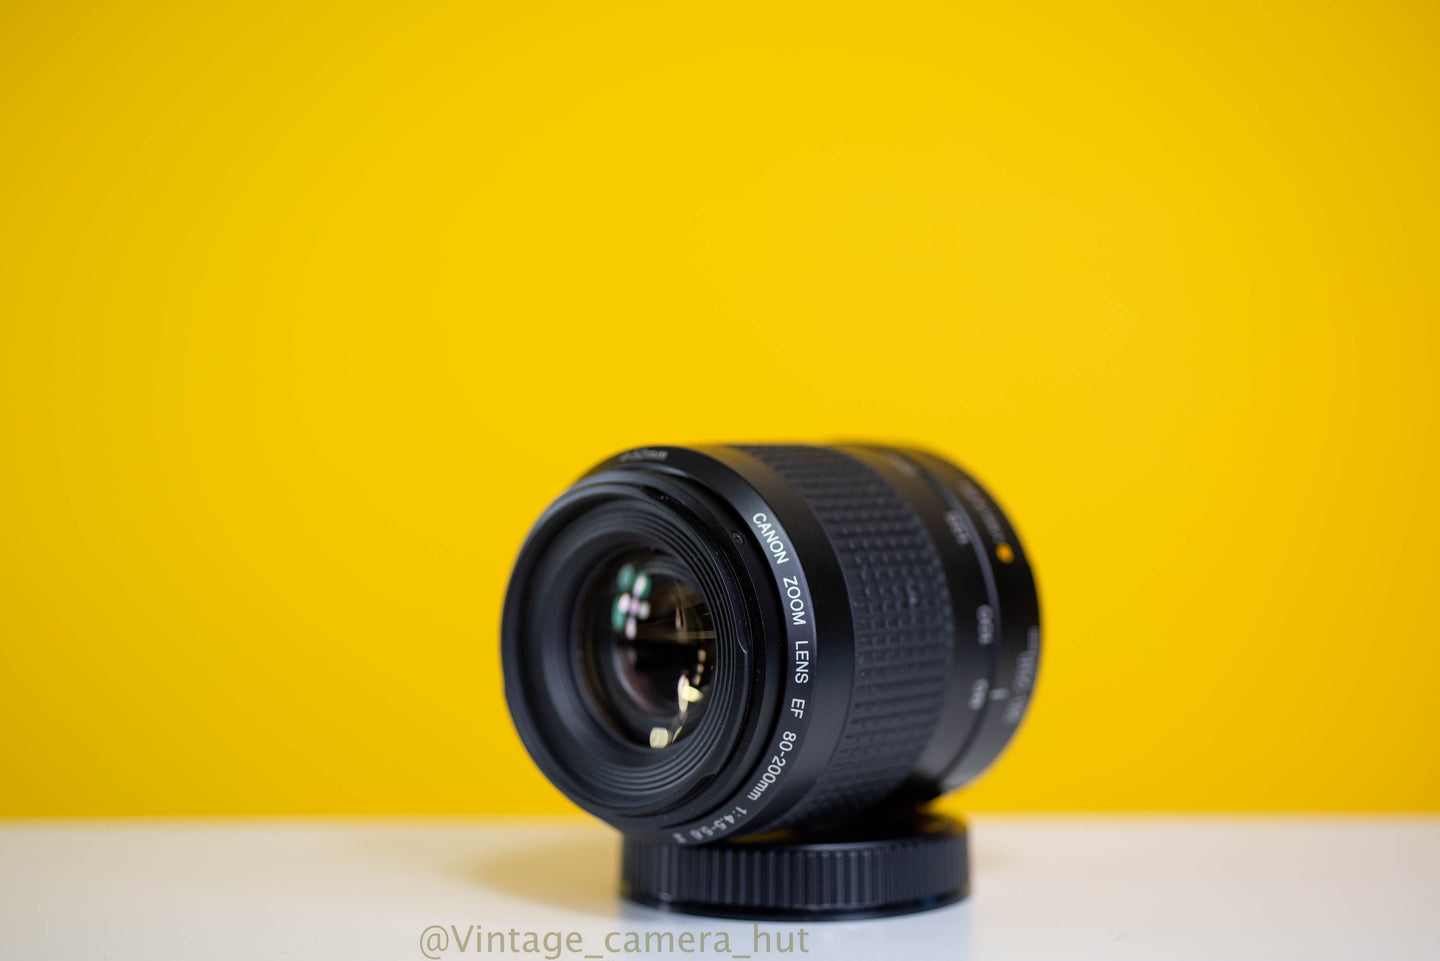 Canon EF 80-200mm f/4.5-5.6 II Zoom Lens